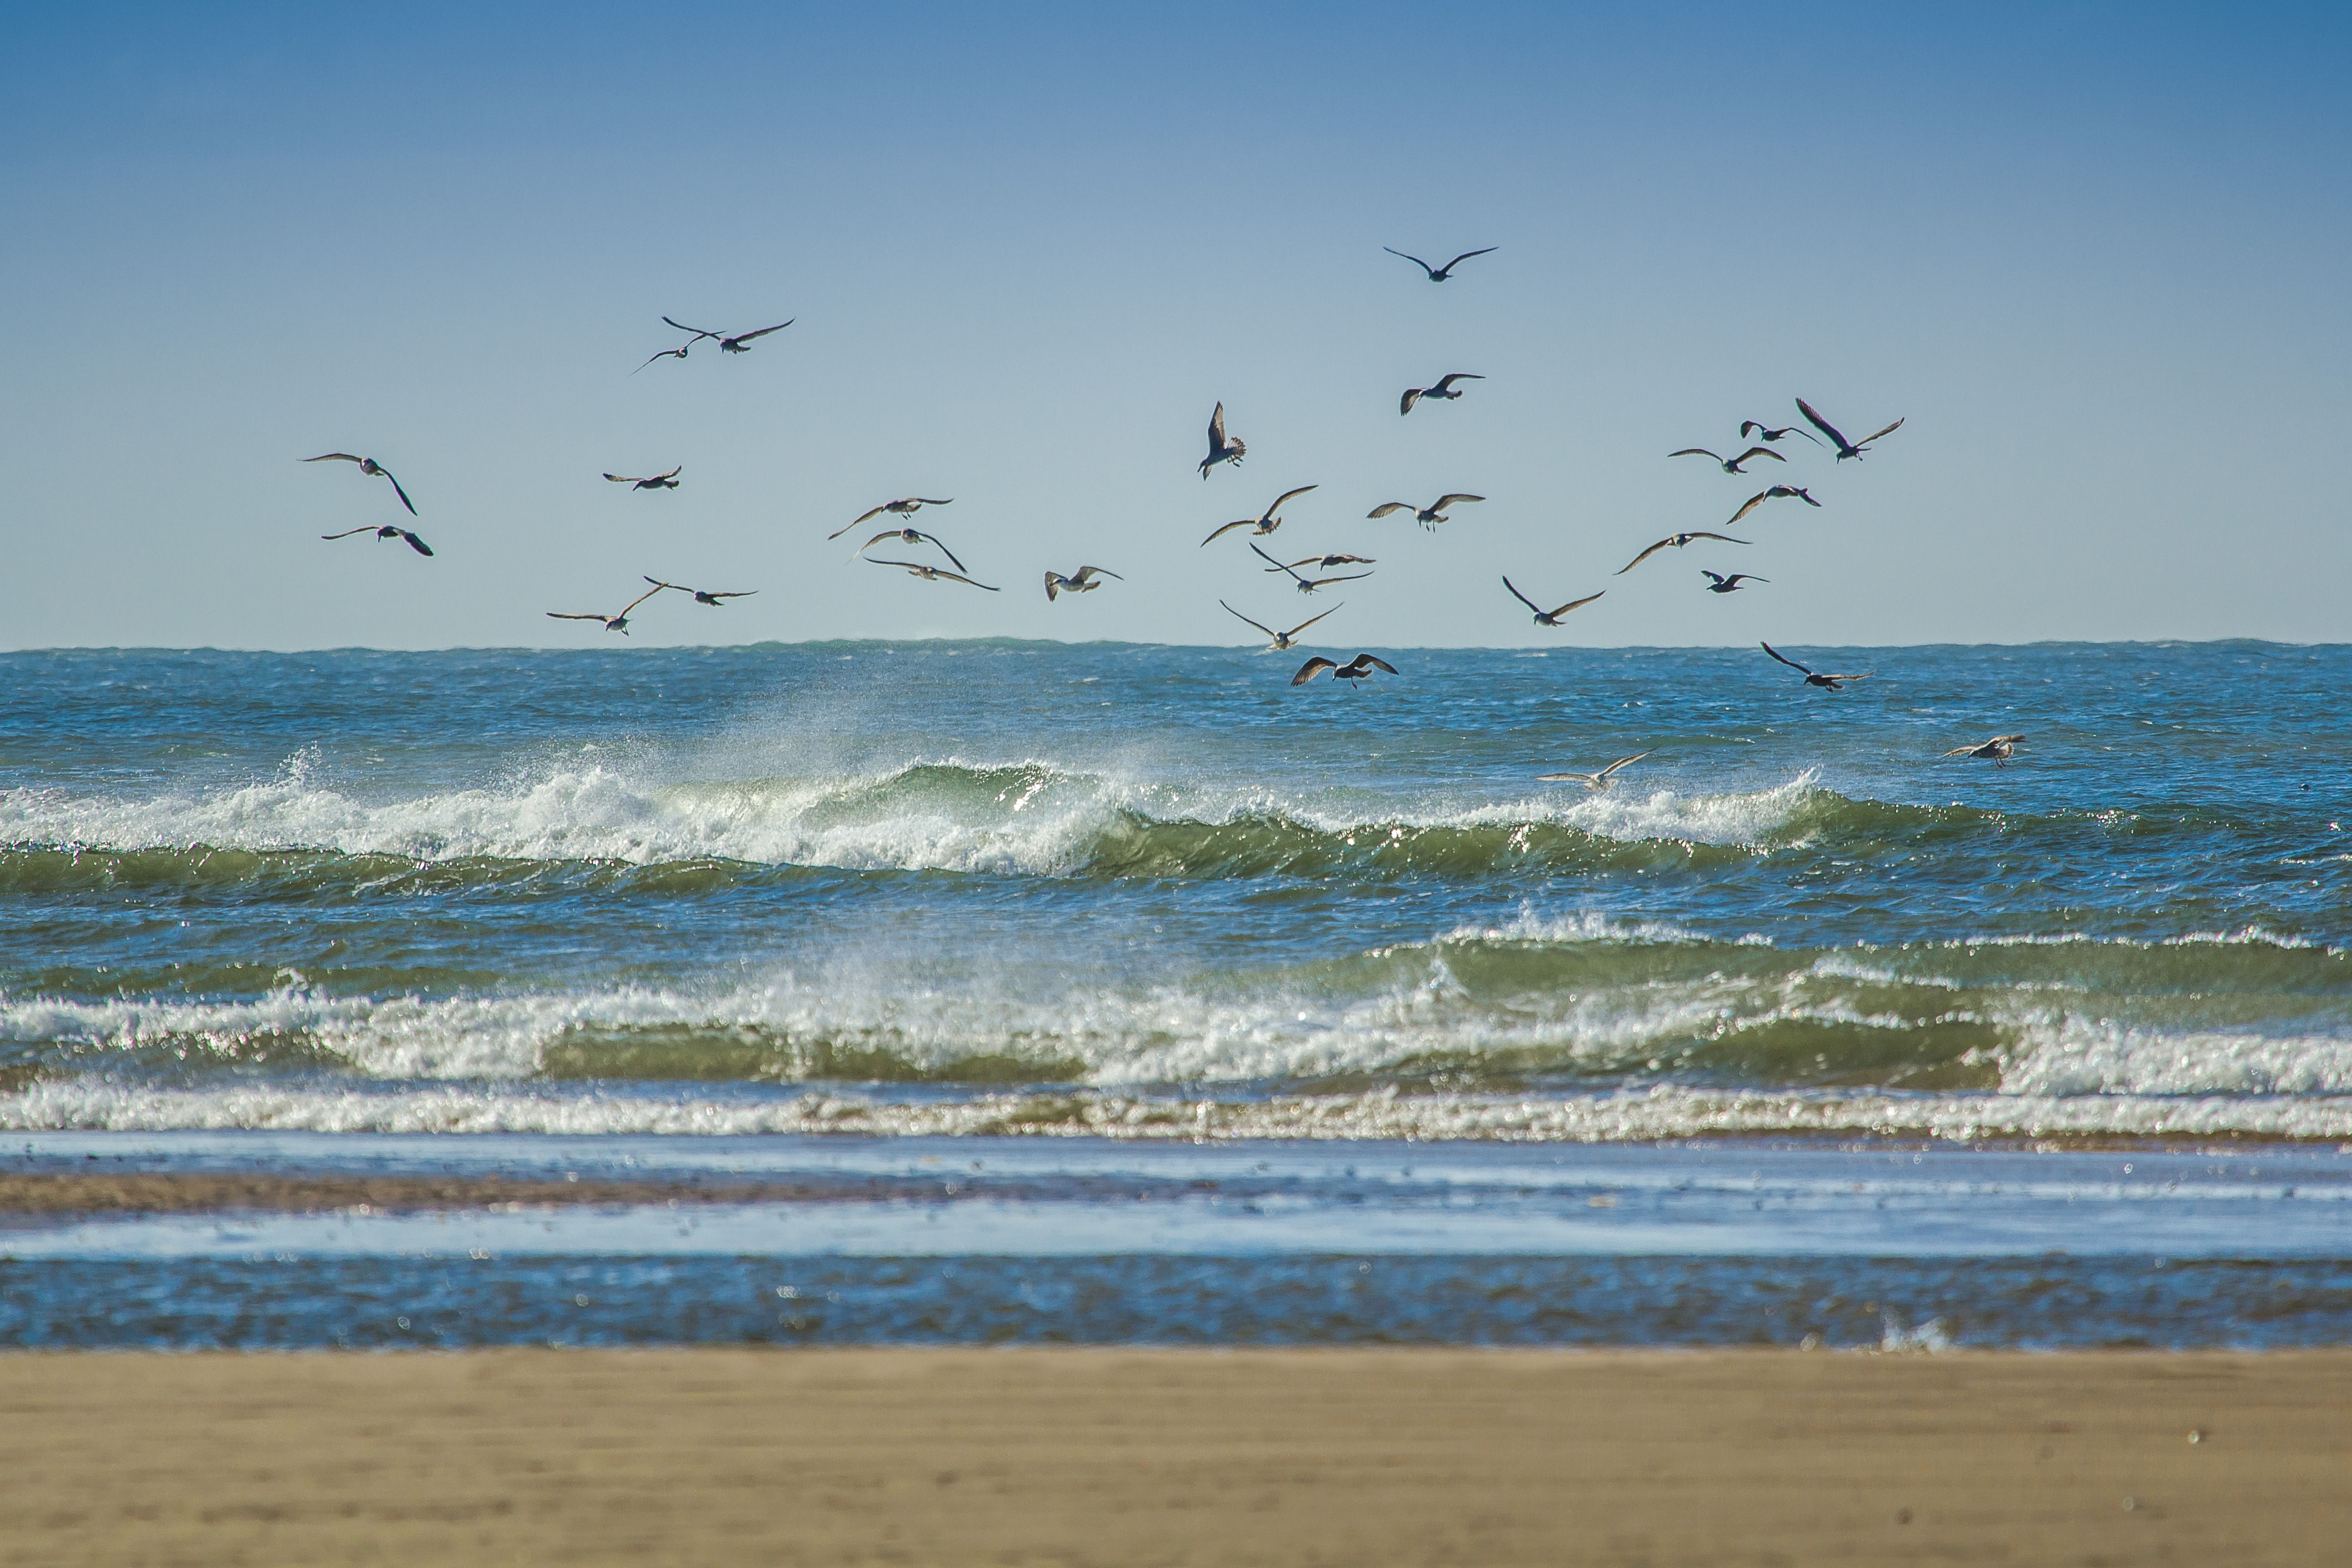 Фото пляж, море, побережье, песок, океан, горизонт, птица, берег, волна, ветер, морская птица, стадо, чайка, водоём, Англия - бесплатные картинки на Fonwall